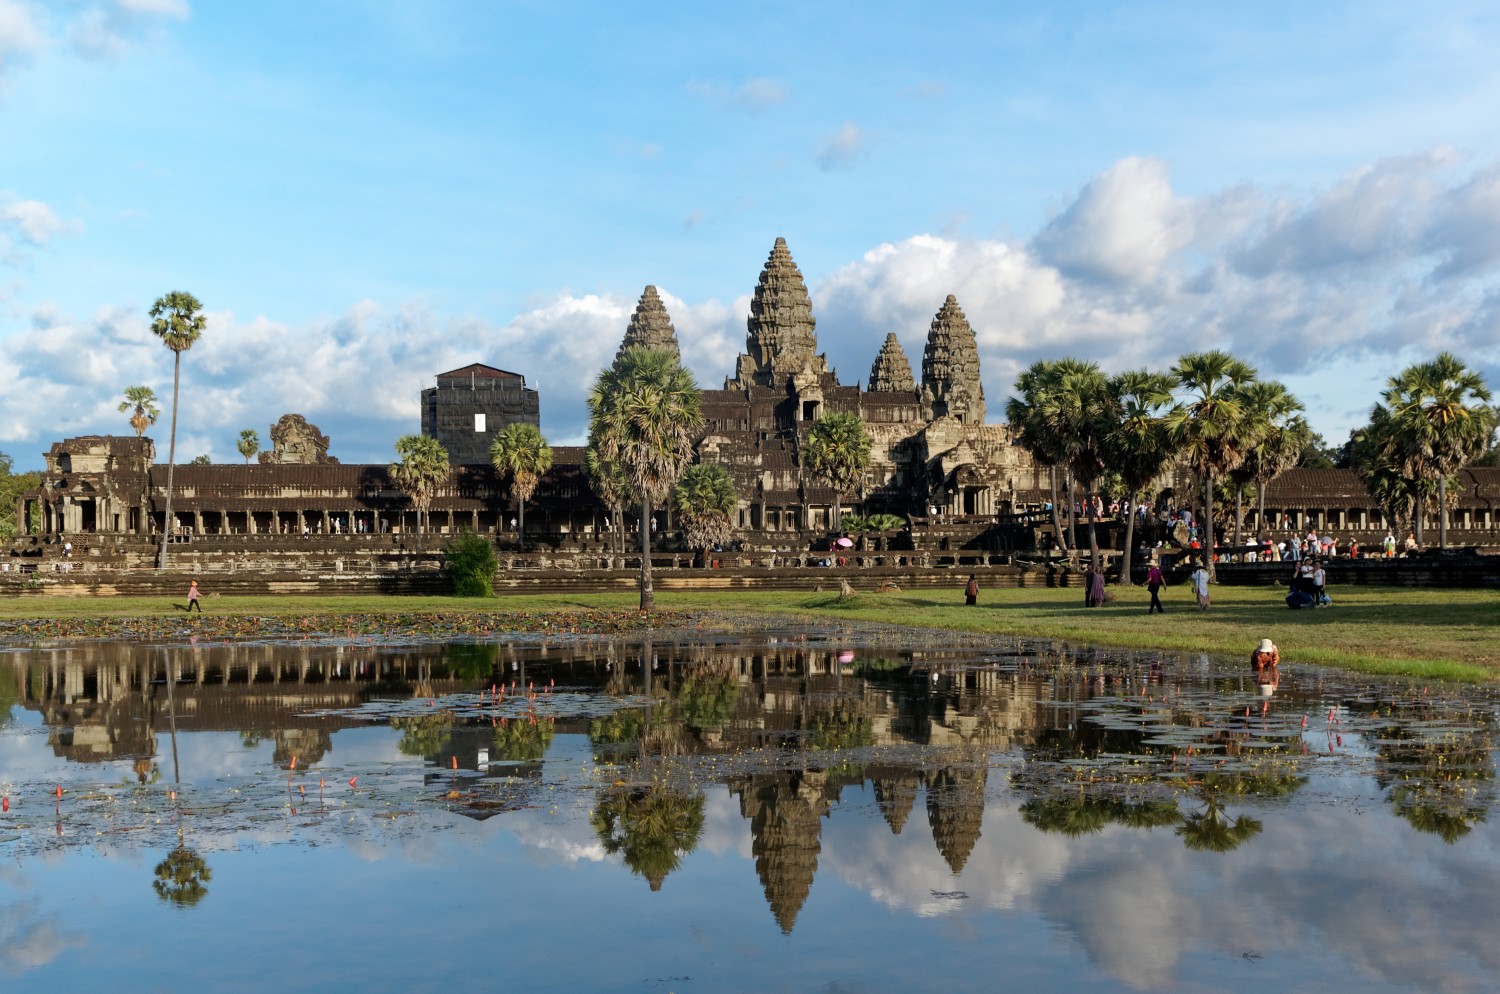 20171126 Angkor Wat 4712 DxO